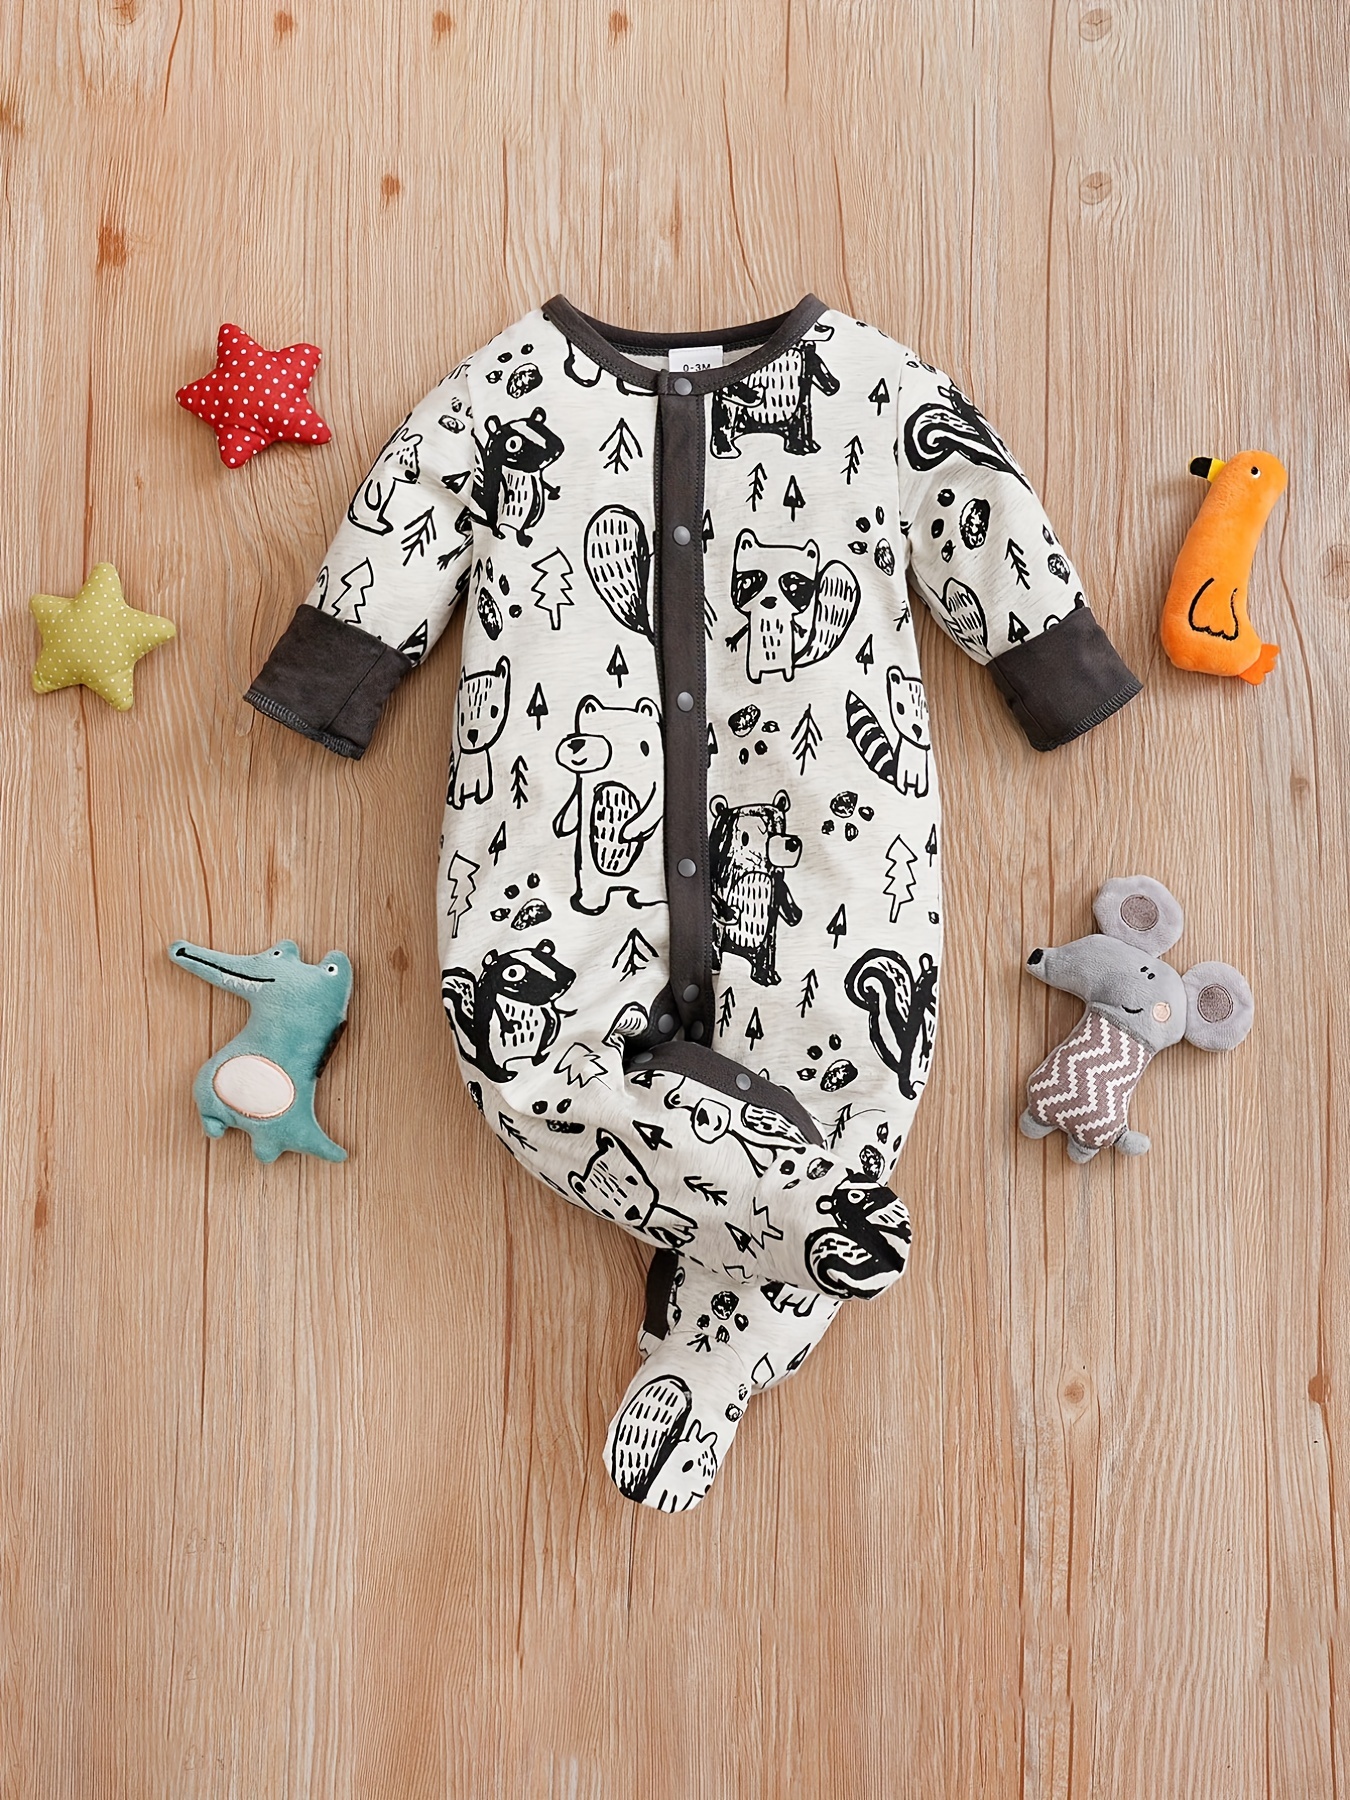 Newborn Baby Warm & Cute Bear Shape Hooded Jumpsuit Zip Up Onesie Romper  Fall Winter Outwear